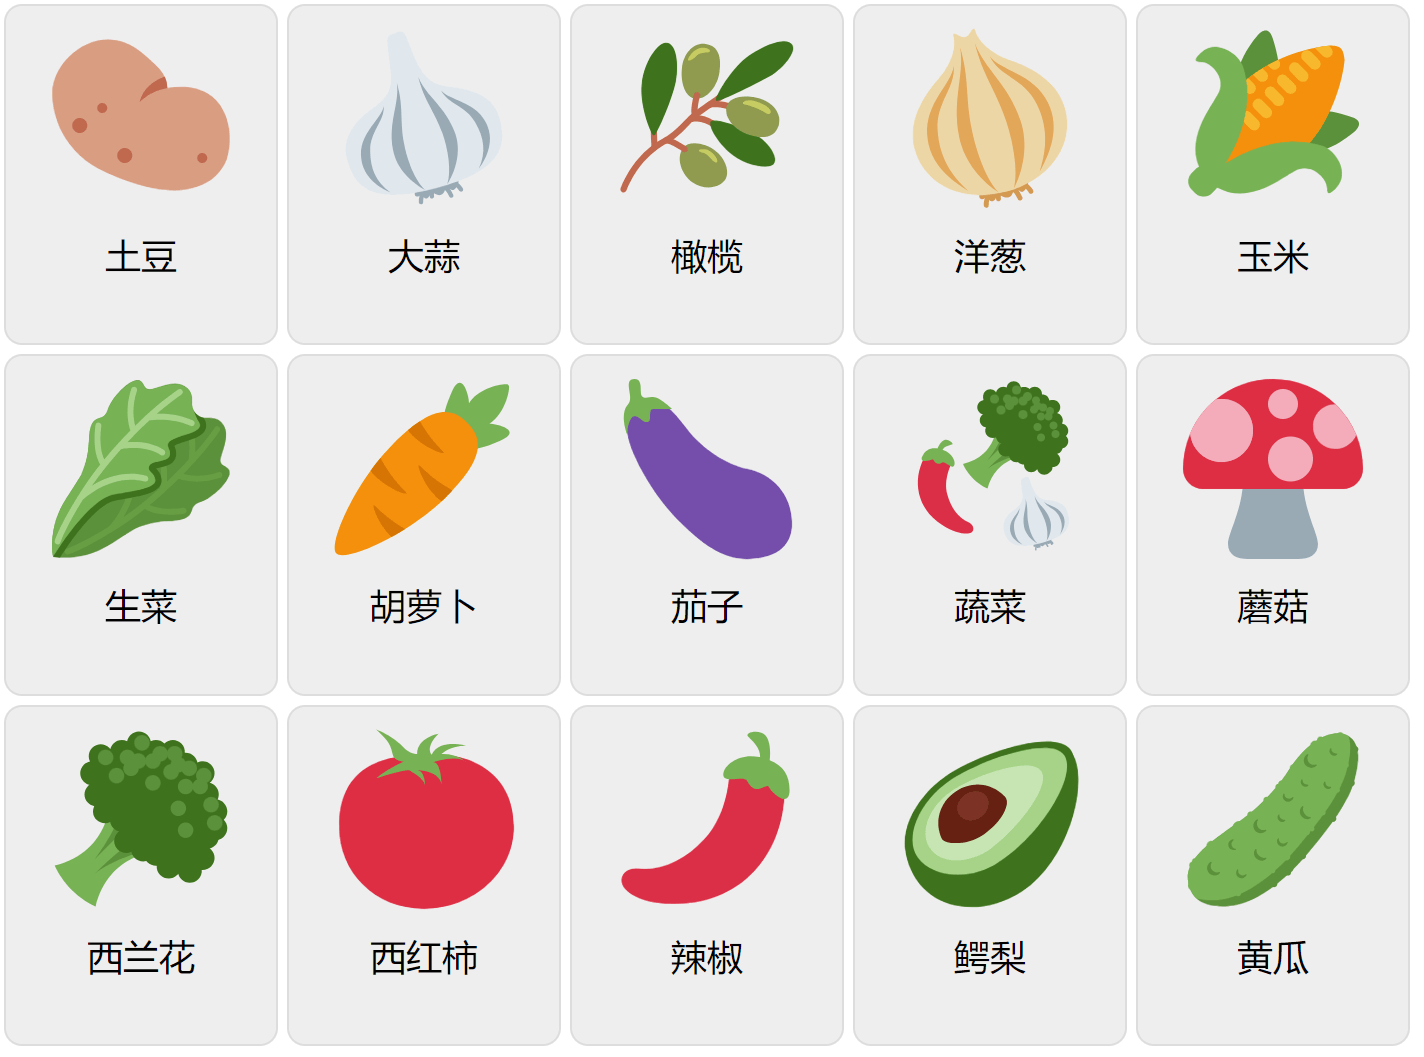 Verduras en chino mandarín